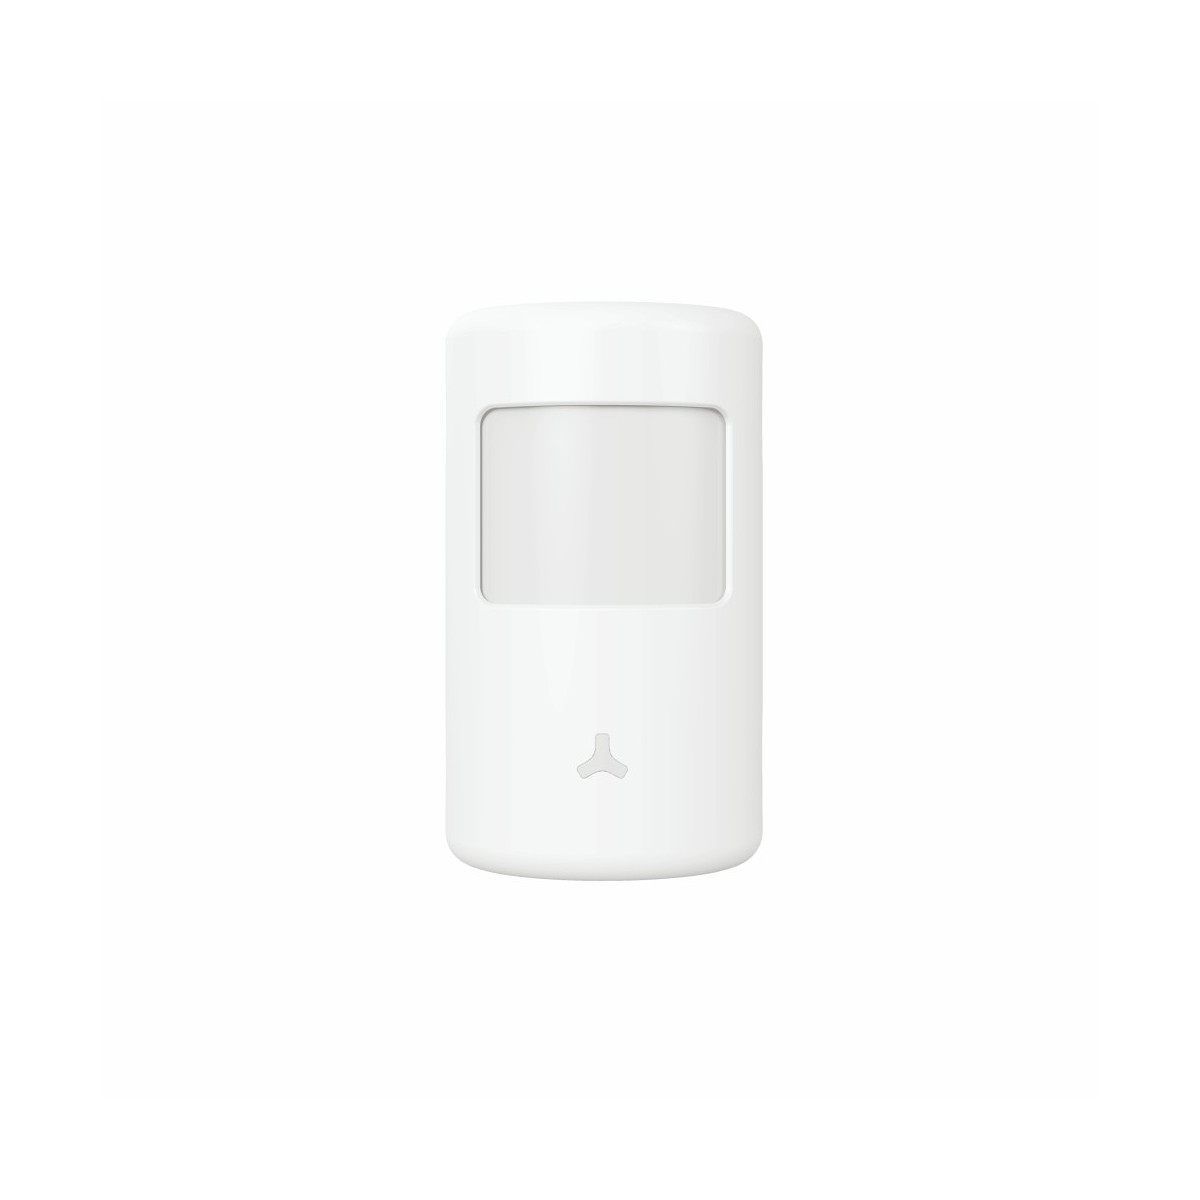 Sans fil wifi hd écran tactile intelligent maison kits de système d'alarme  de sécurité pour garage / résidentiel / magasin 433mhz support